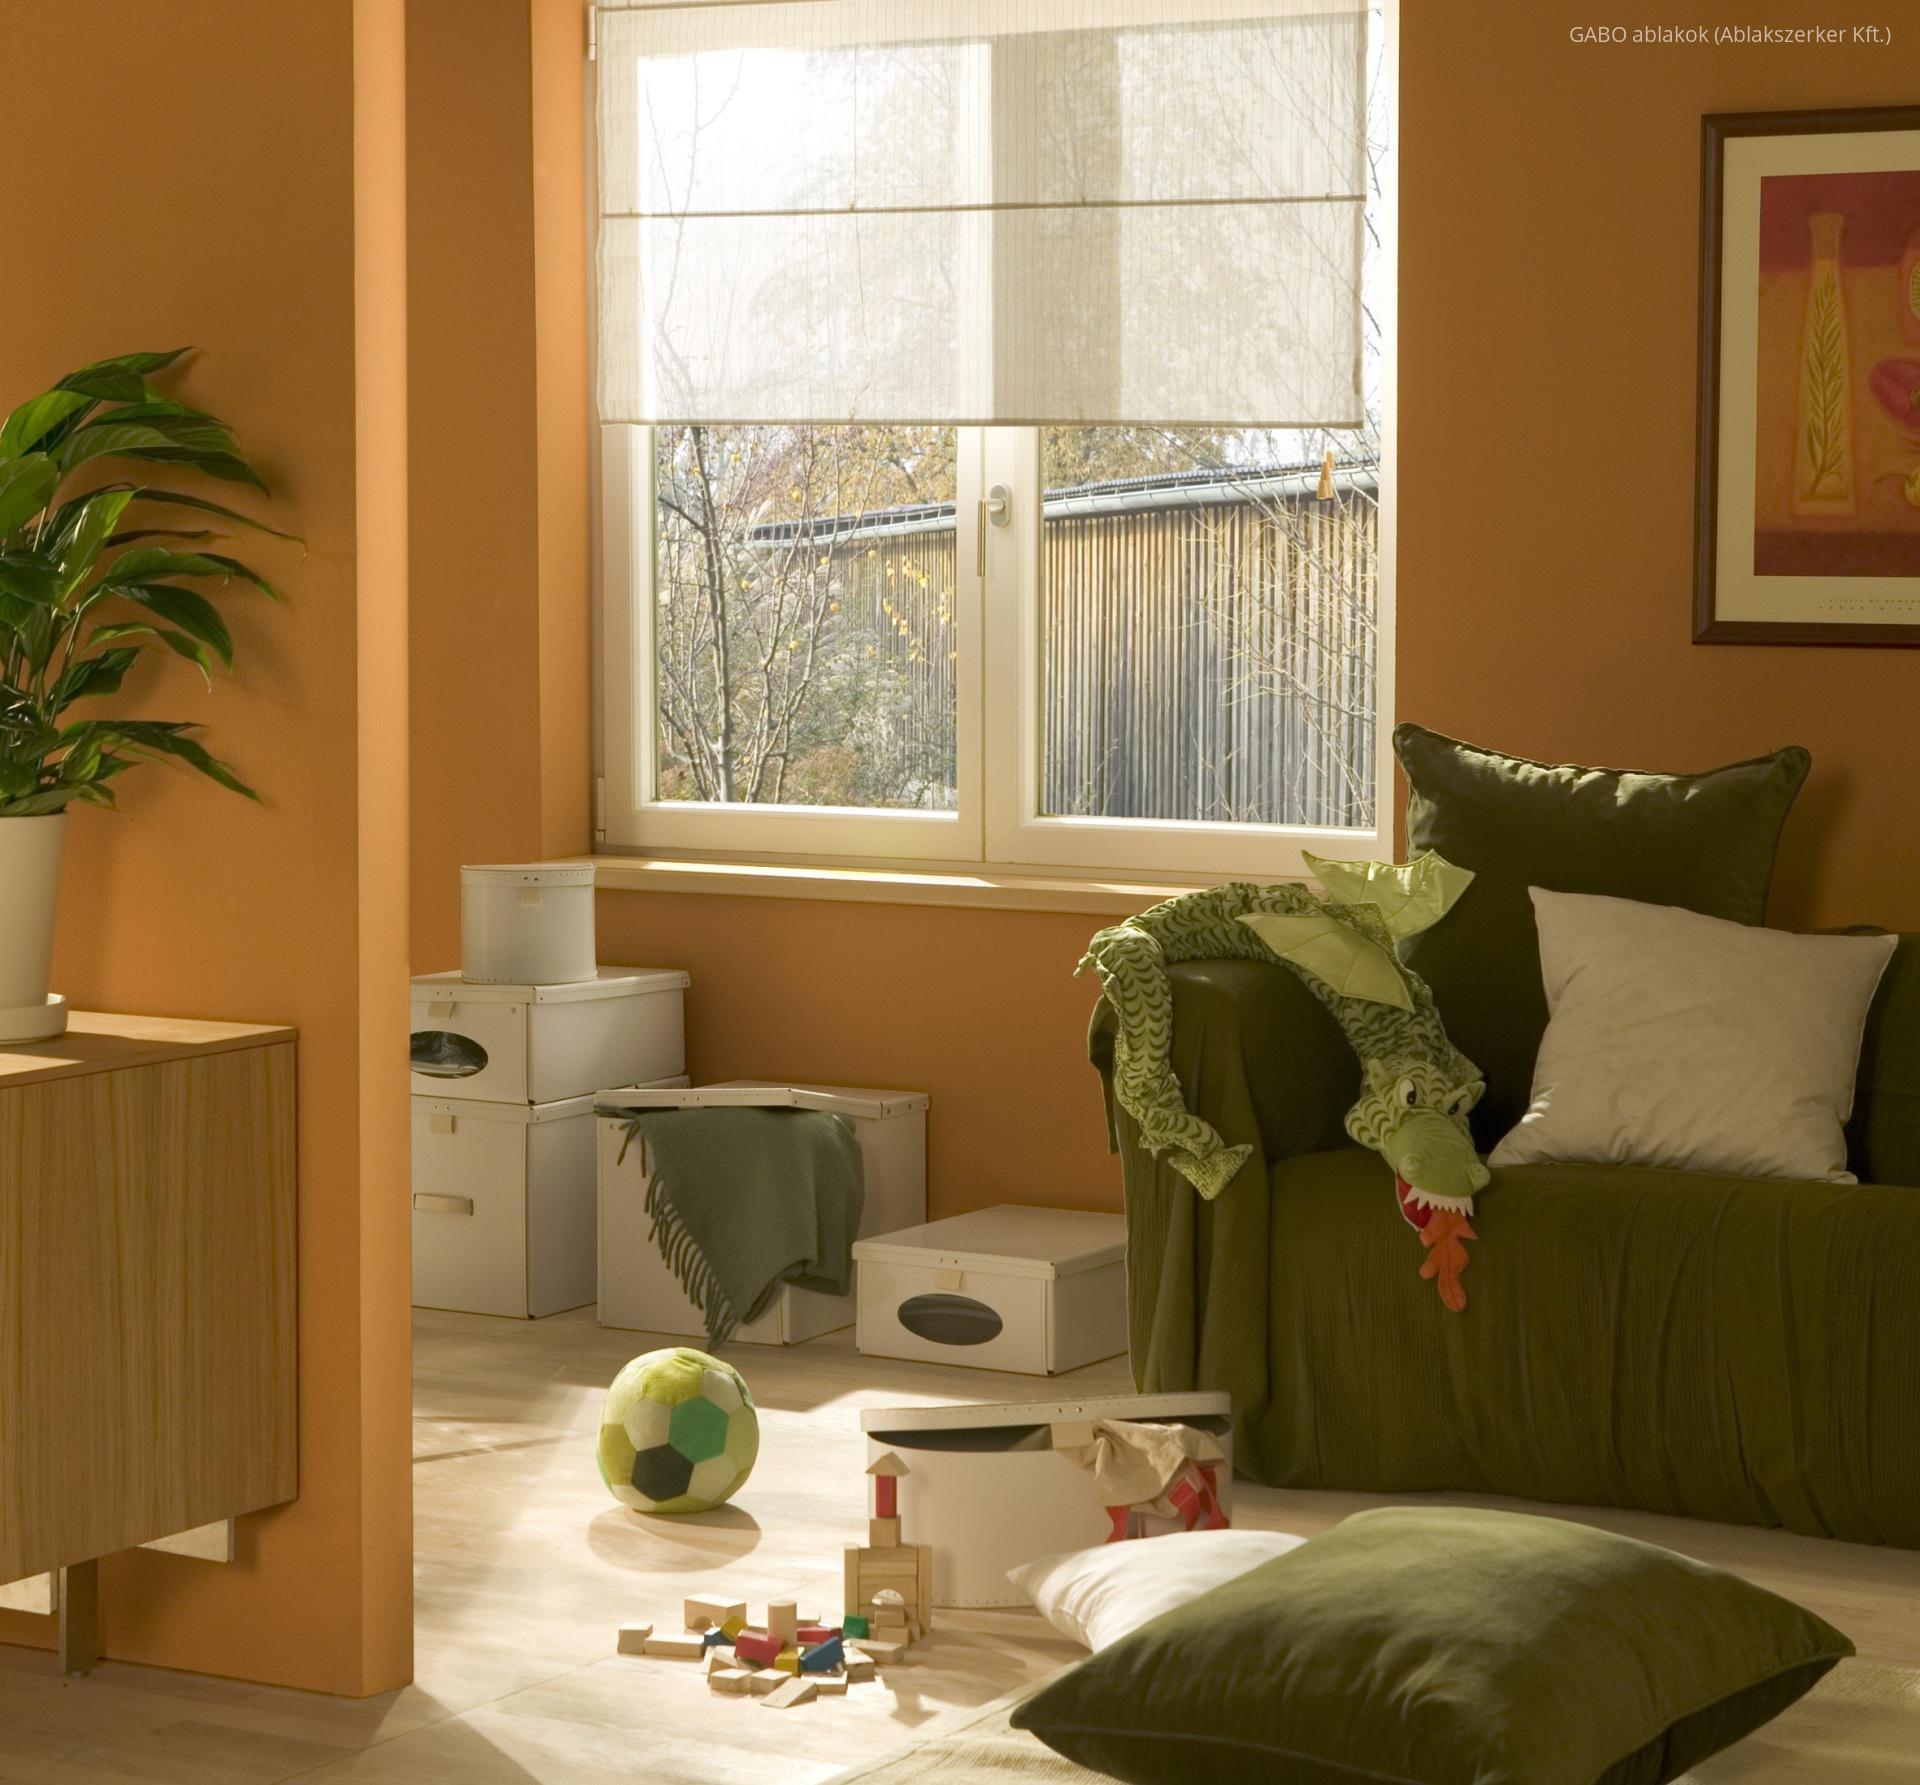 Kétszárnyú ablak a nappaliban - nappali ötlet, modern stílusban